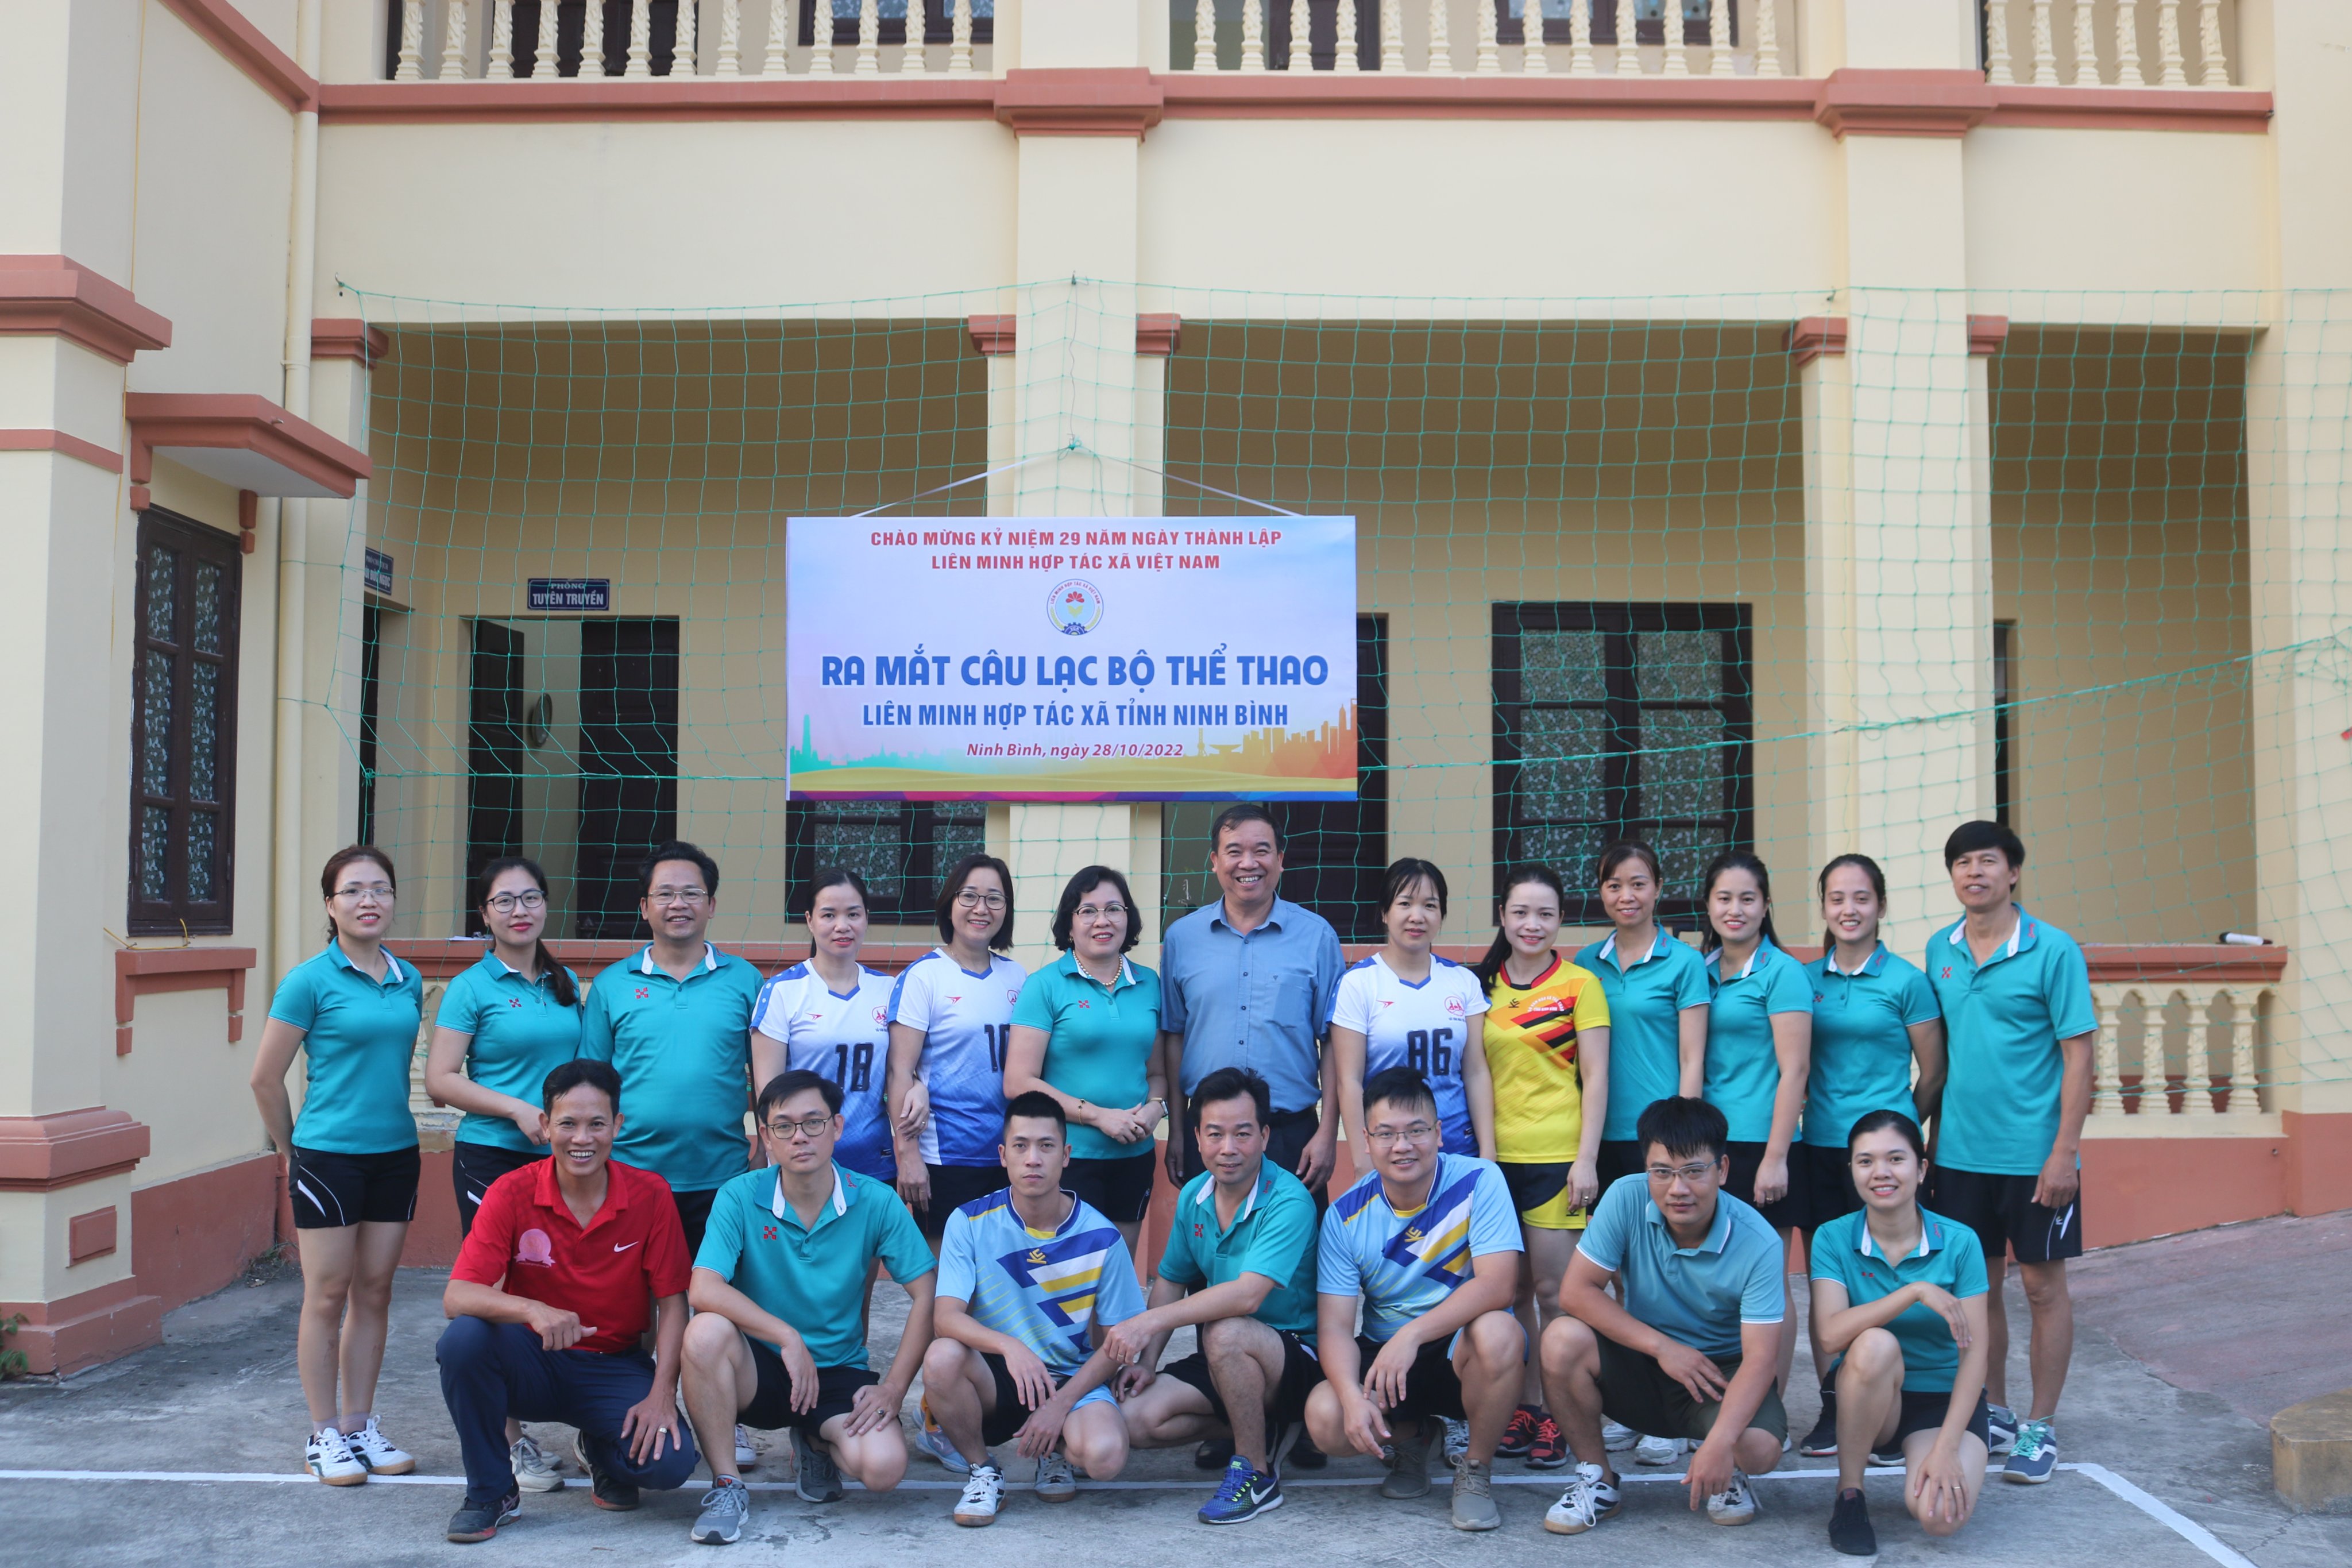 Ra mắt Câu lạc bộ thể thao Liên minh Hợp tác xã tỉnh Ninh Bình